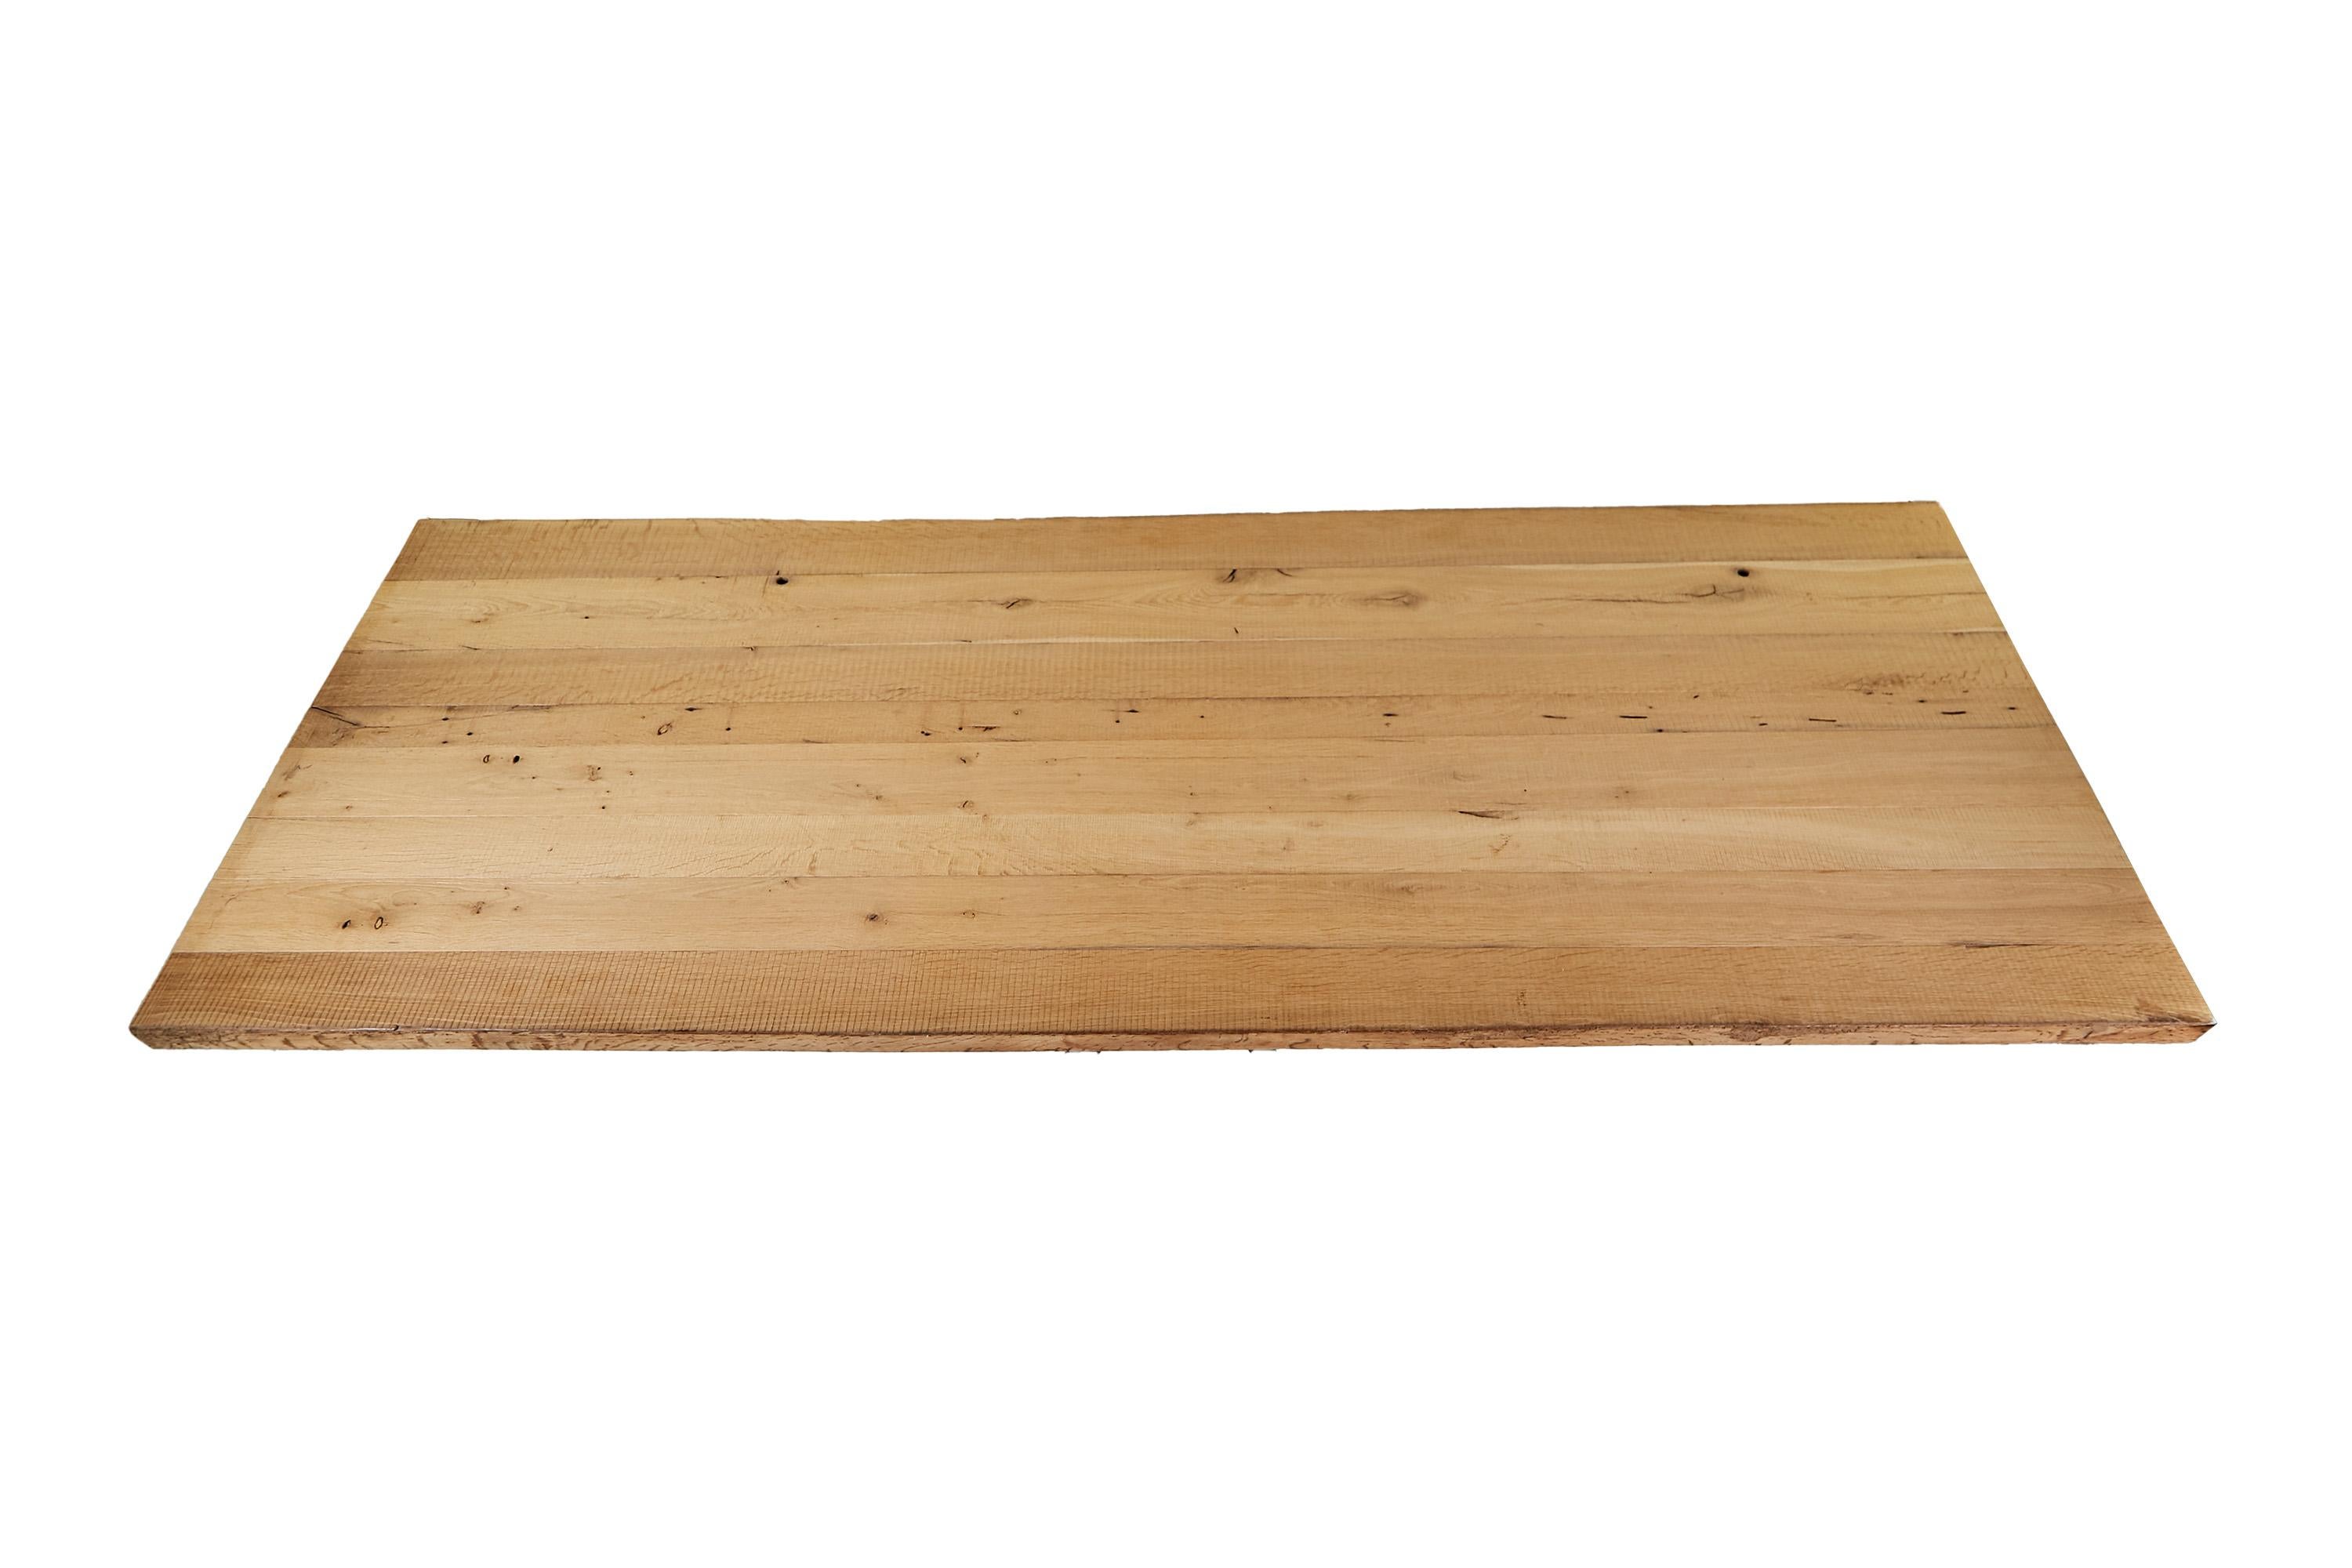 Sehr schöne Tischplatte aus Eiche. Die Oberfläche ist rau gebürstet. Das MATERIAL wurde aus einem alten Balken recycelt, daher hat das Holz seinen besonderen Alterscharakter.

Die Tischplatte wird ohne Gestell geliefert. Diese kann je nach Version